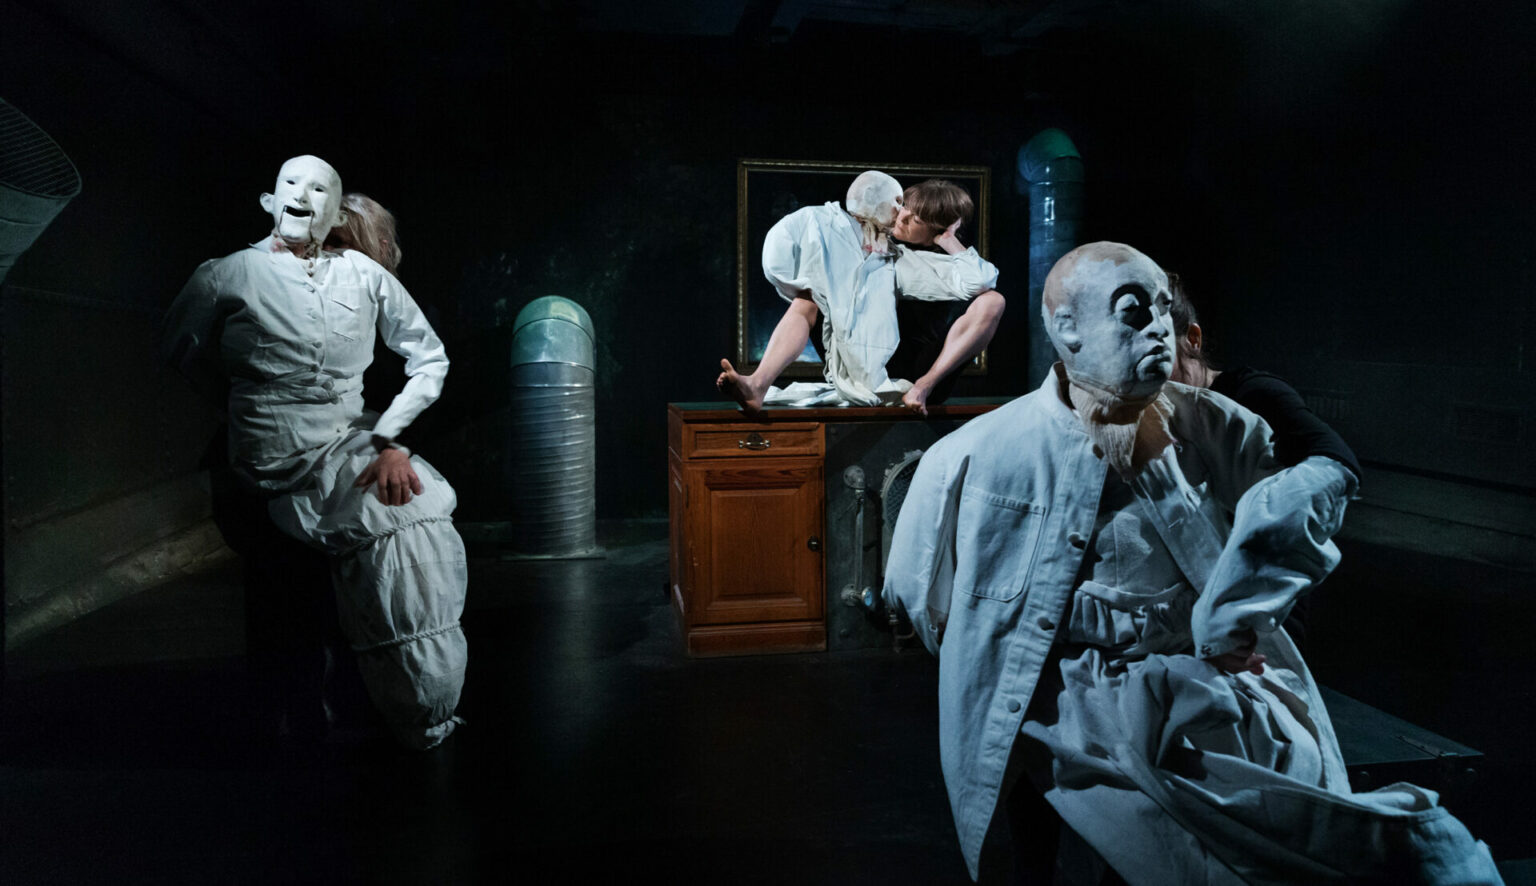 The performance “Blod, Svigt og Tårer” at the dance theater Bora Bora